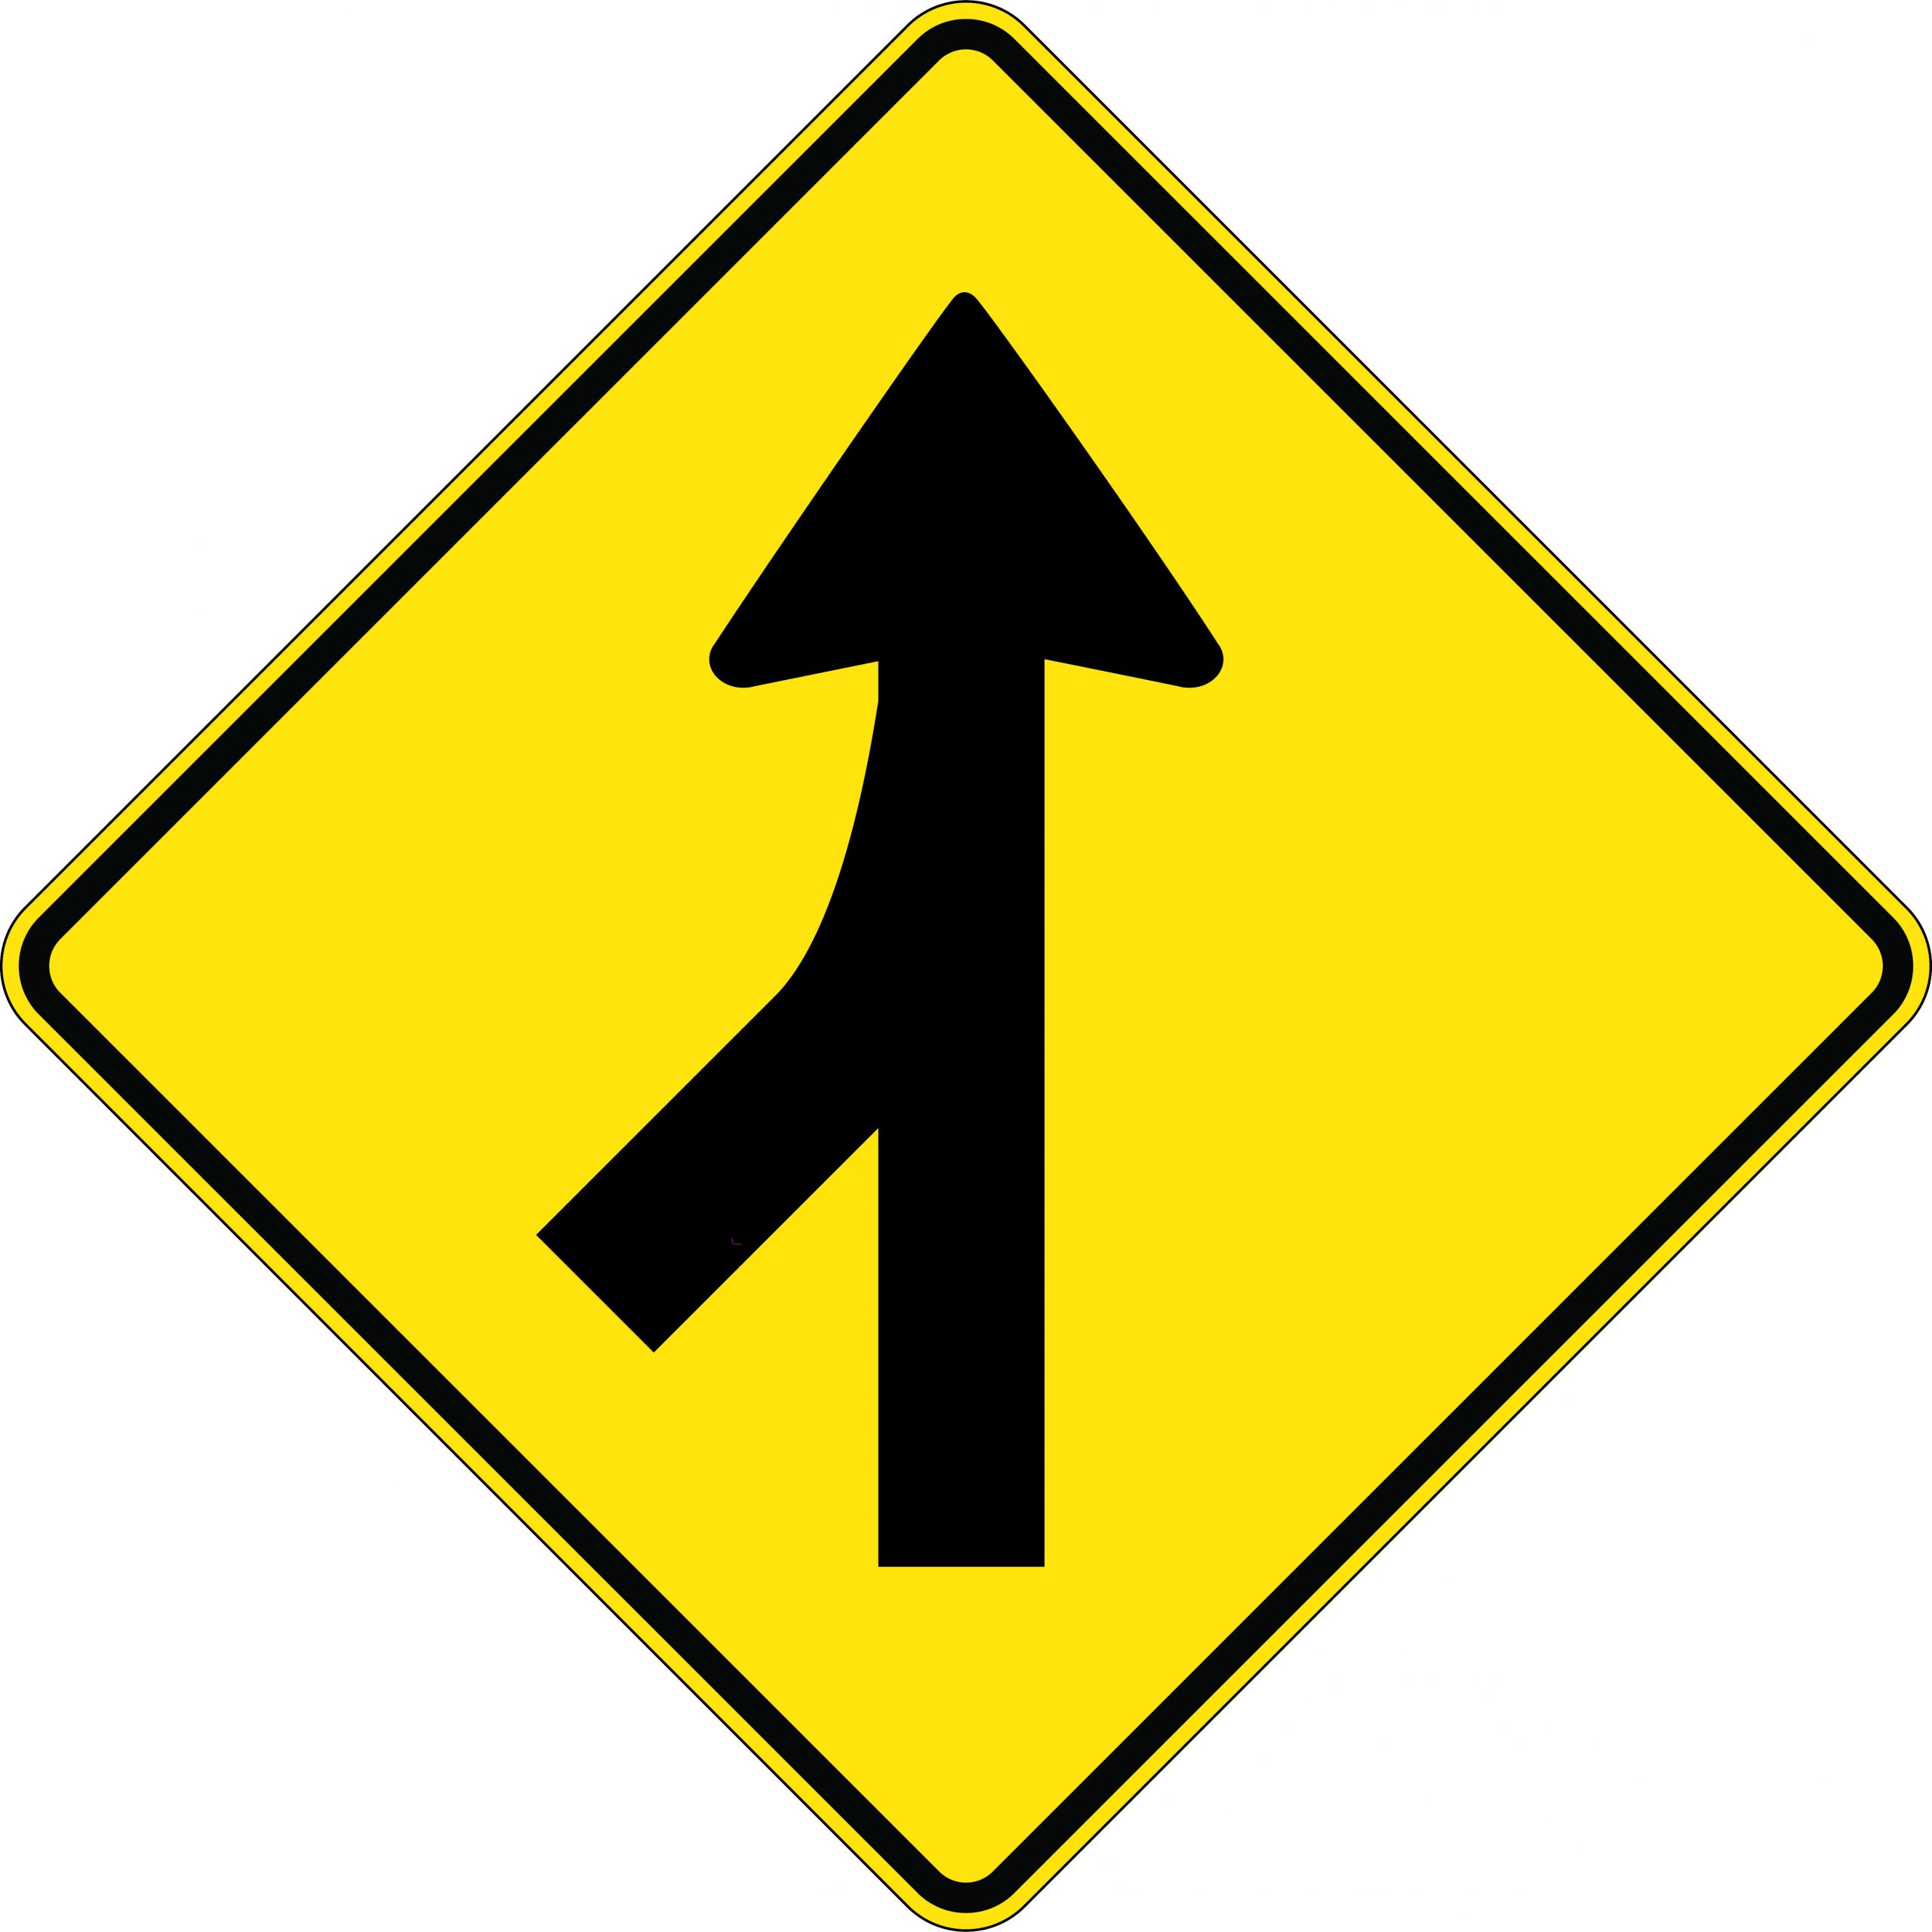 merging traffic sign